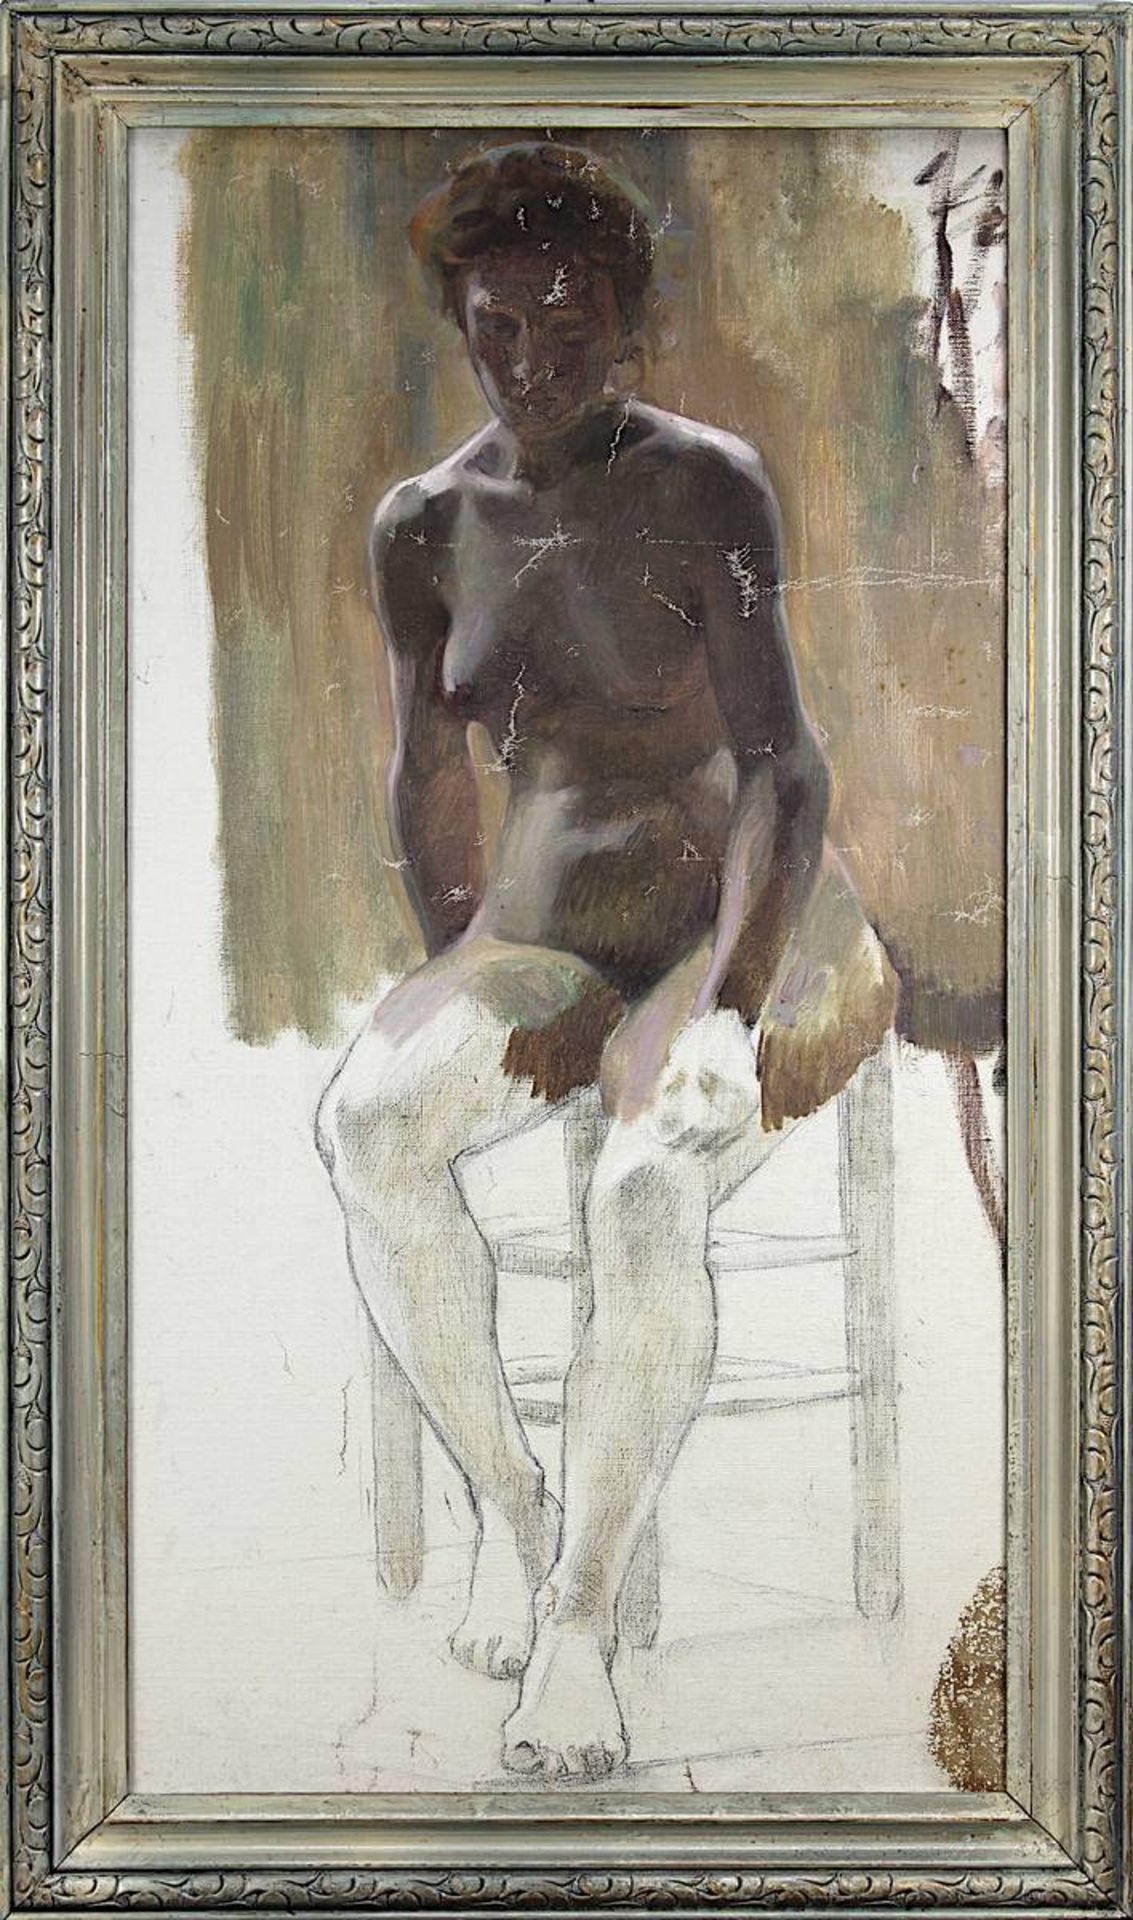 Aktmaler 2. H. 19. Jh., auf Stuhl sitzender weiblicher Akt, Aktstudie um 1890, Öl auf Leinwand,